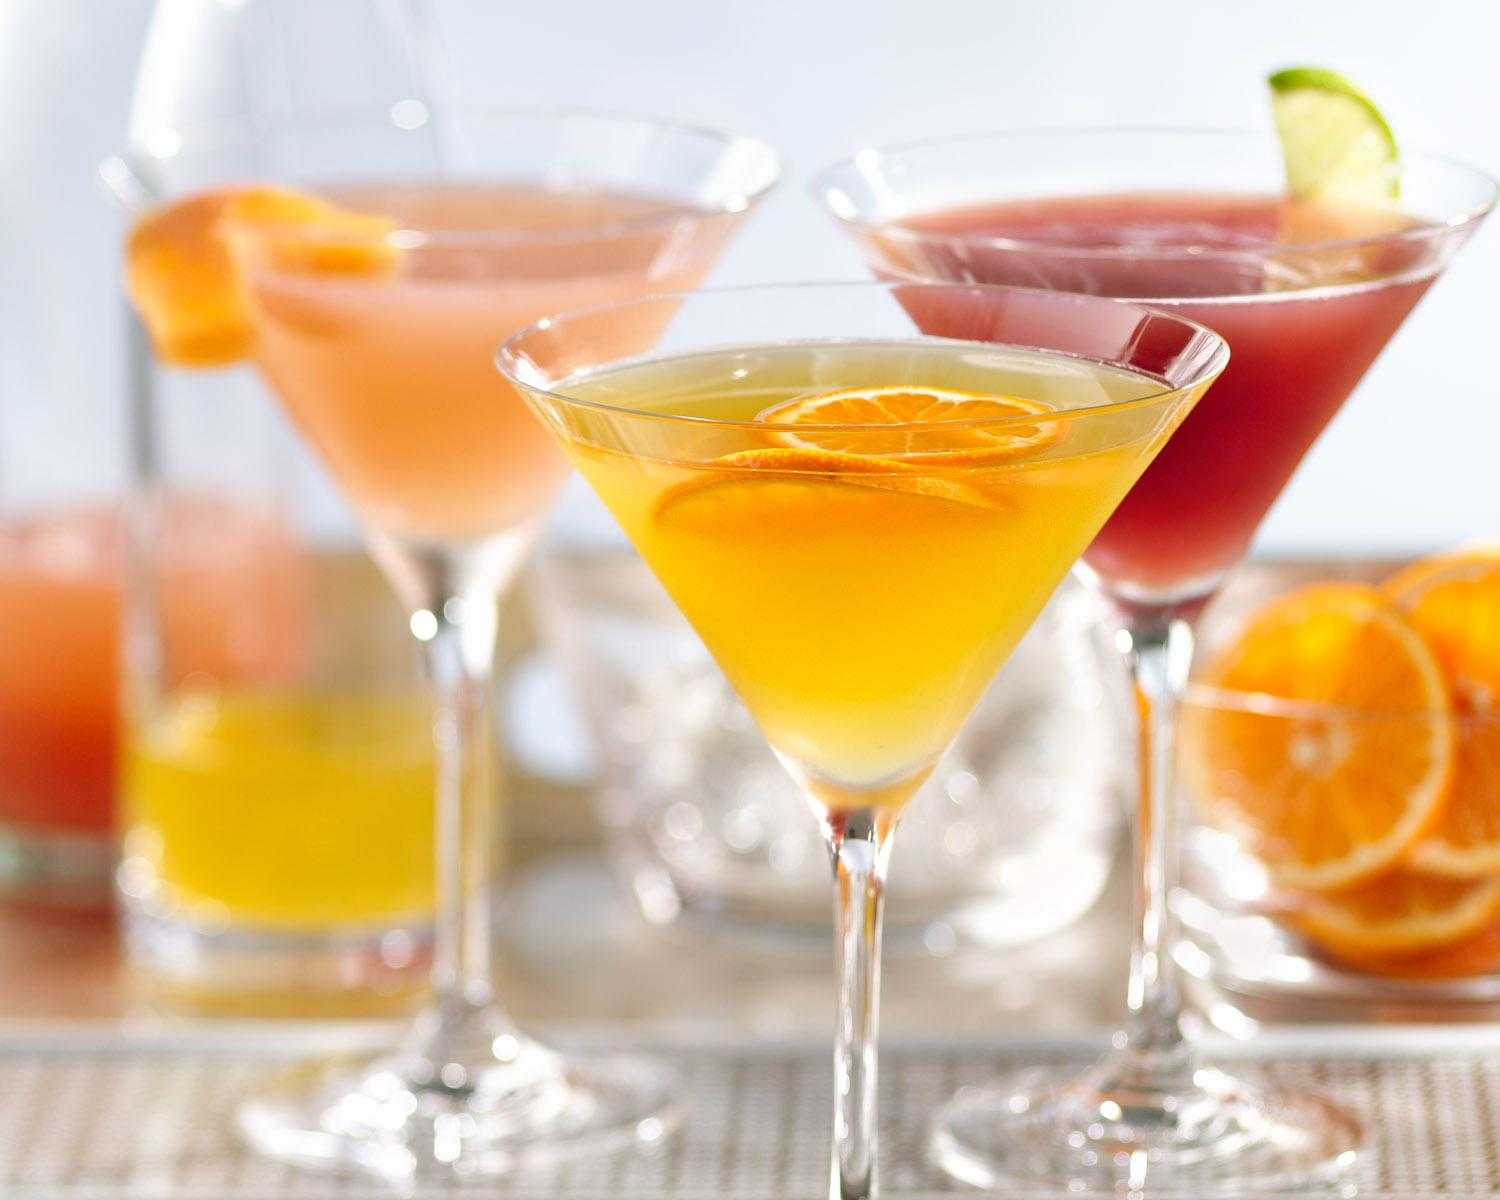 Что дополнит вкус мартини: с каким соком пьют вермут? рецепты лучших коктейлей и рекомендации по приготовлению. с каким соком пьют мартини?